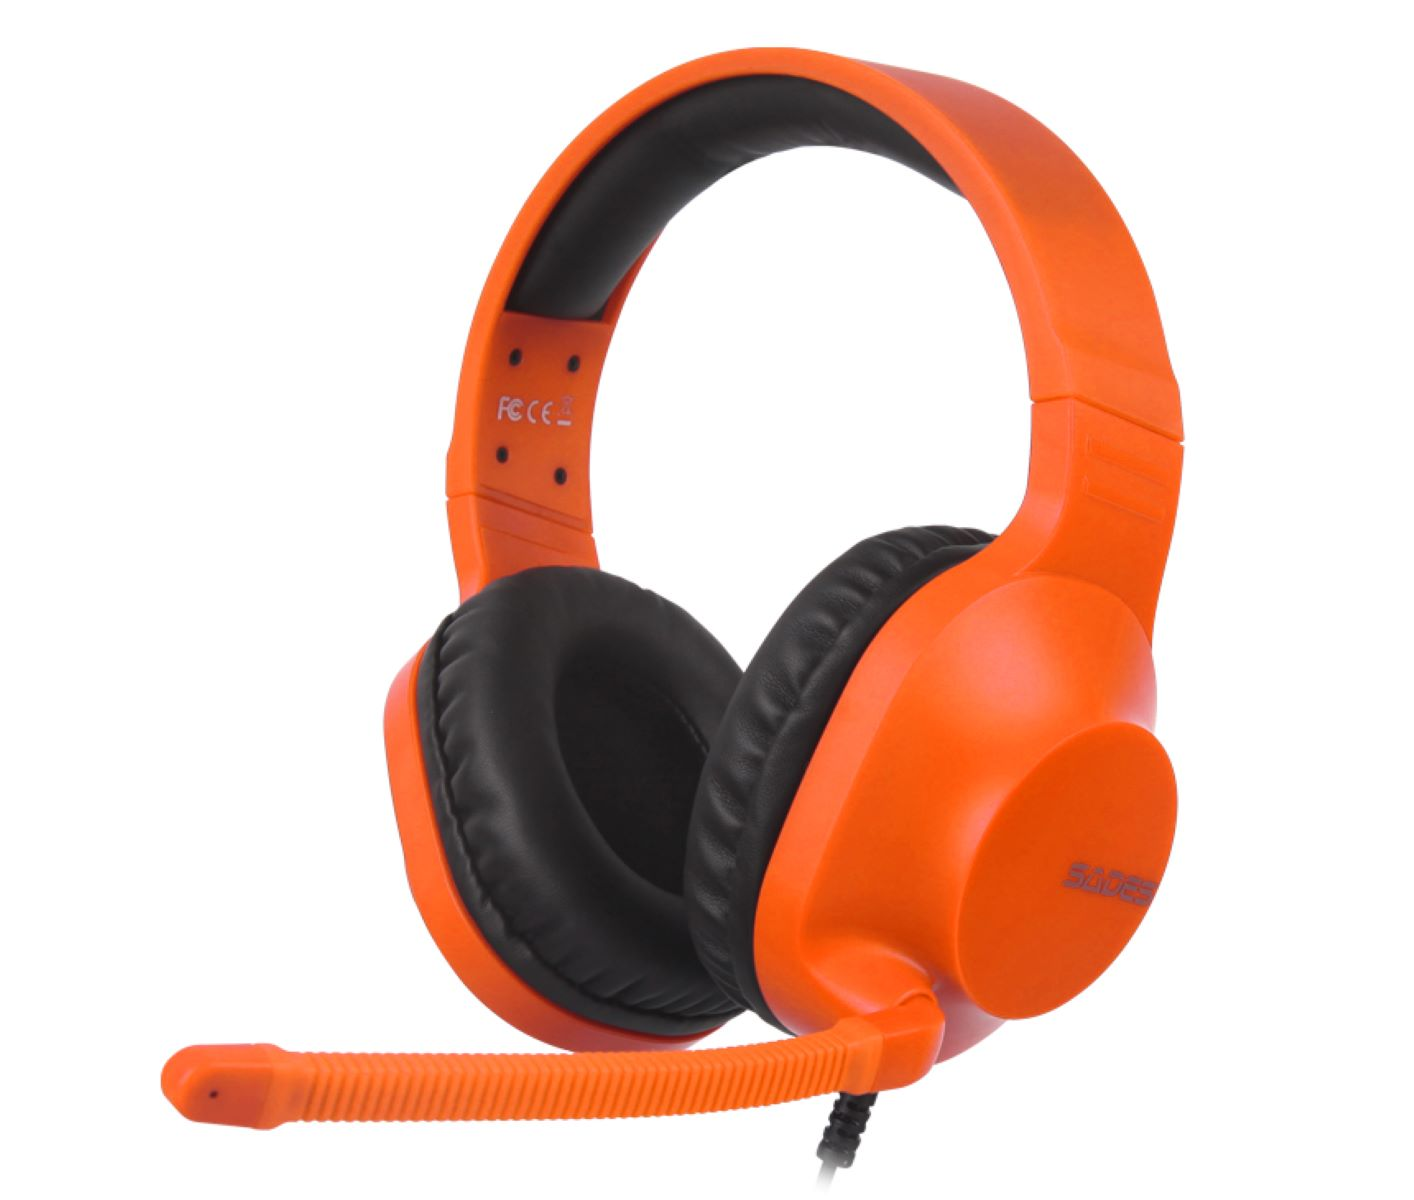 SADES Spirits SA-721, orange Over-ear Gaming Headset